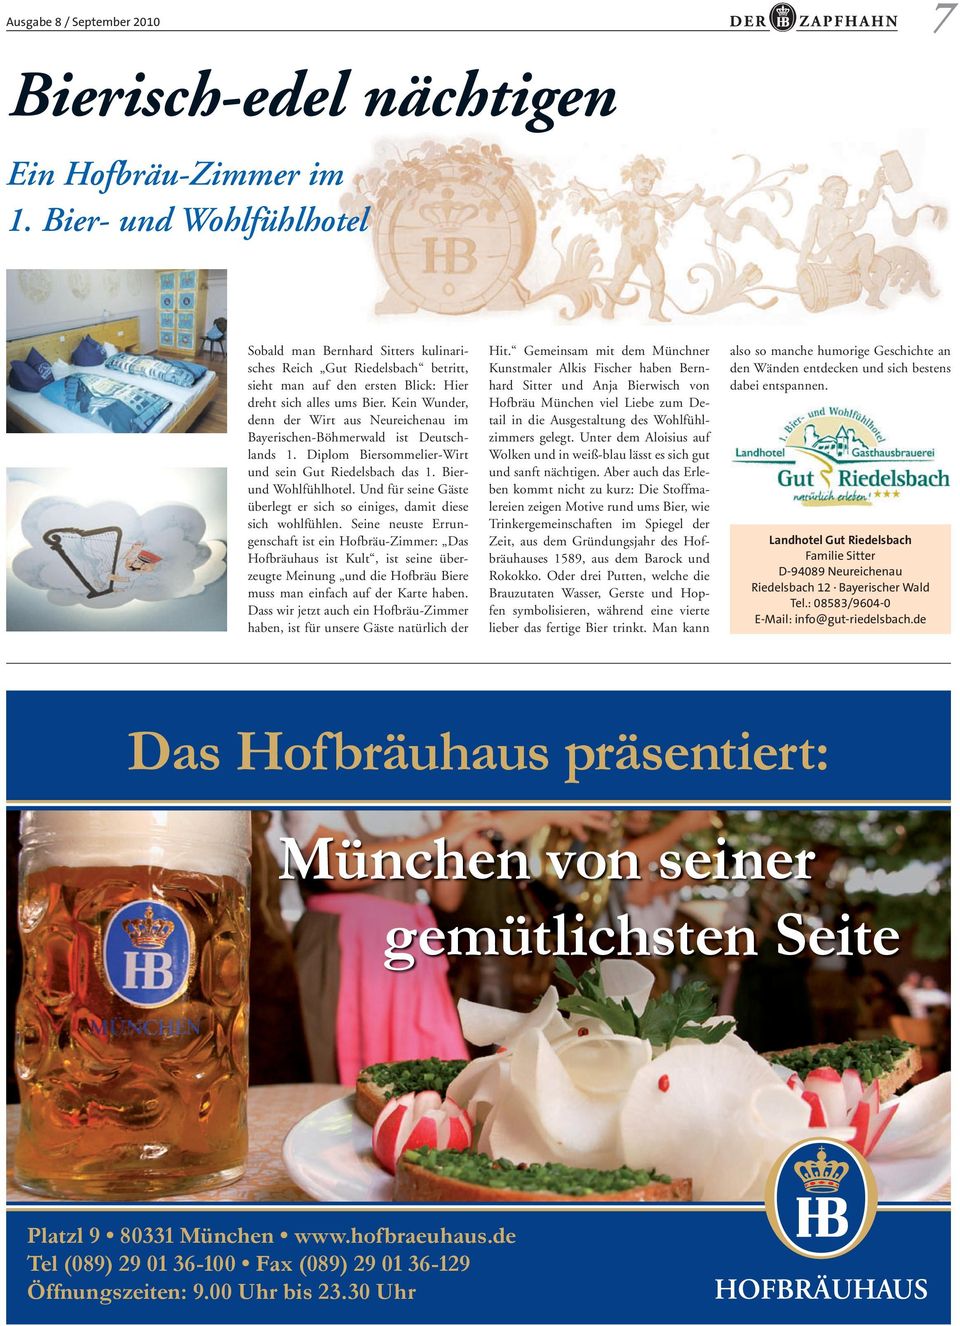 Kein Wunder, denn der Wirt aus Neureichenau im Bayerischen-Böhmerwald ist Deutschlands 1. Diplom Biersommelier-Wirt und sein Gut Riedelsbach das 1. Bierund Wohlfühlhotel.